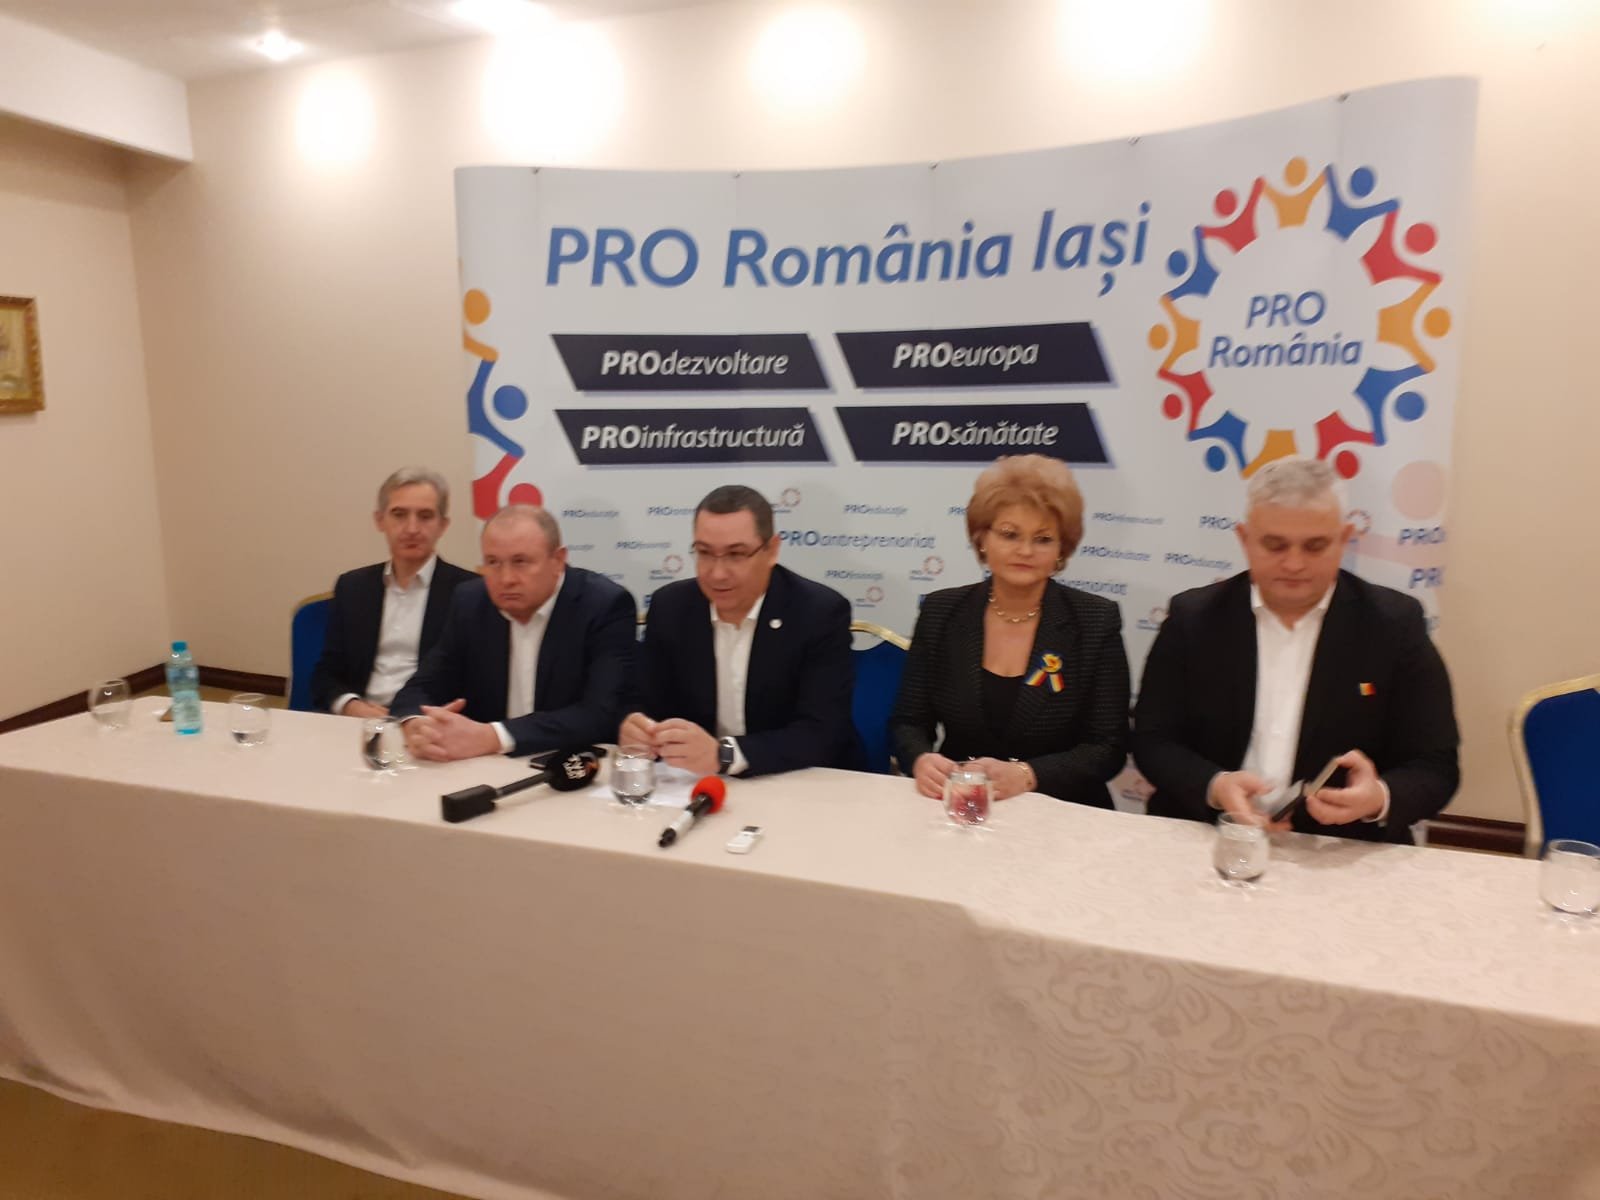  VIDEO: Ponta, la Iași: Visul autostrăzii ruinat, Chirica nu va fi candidatul Pro România la Primărie